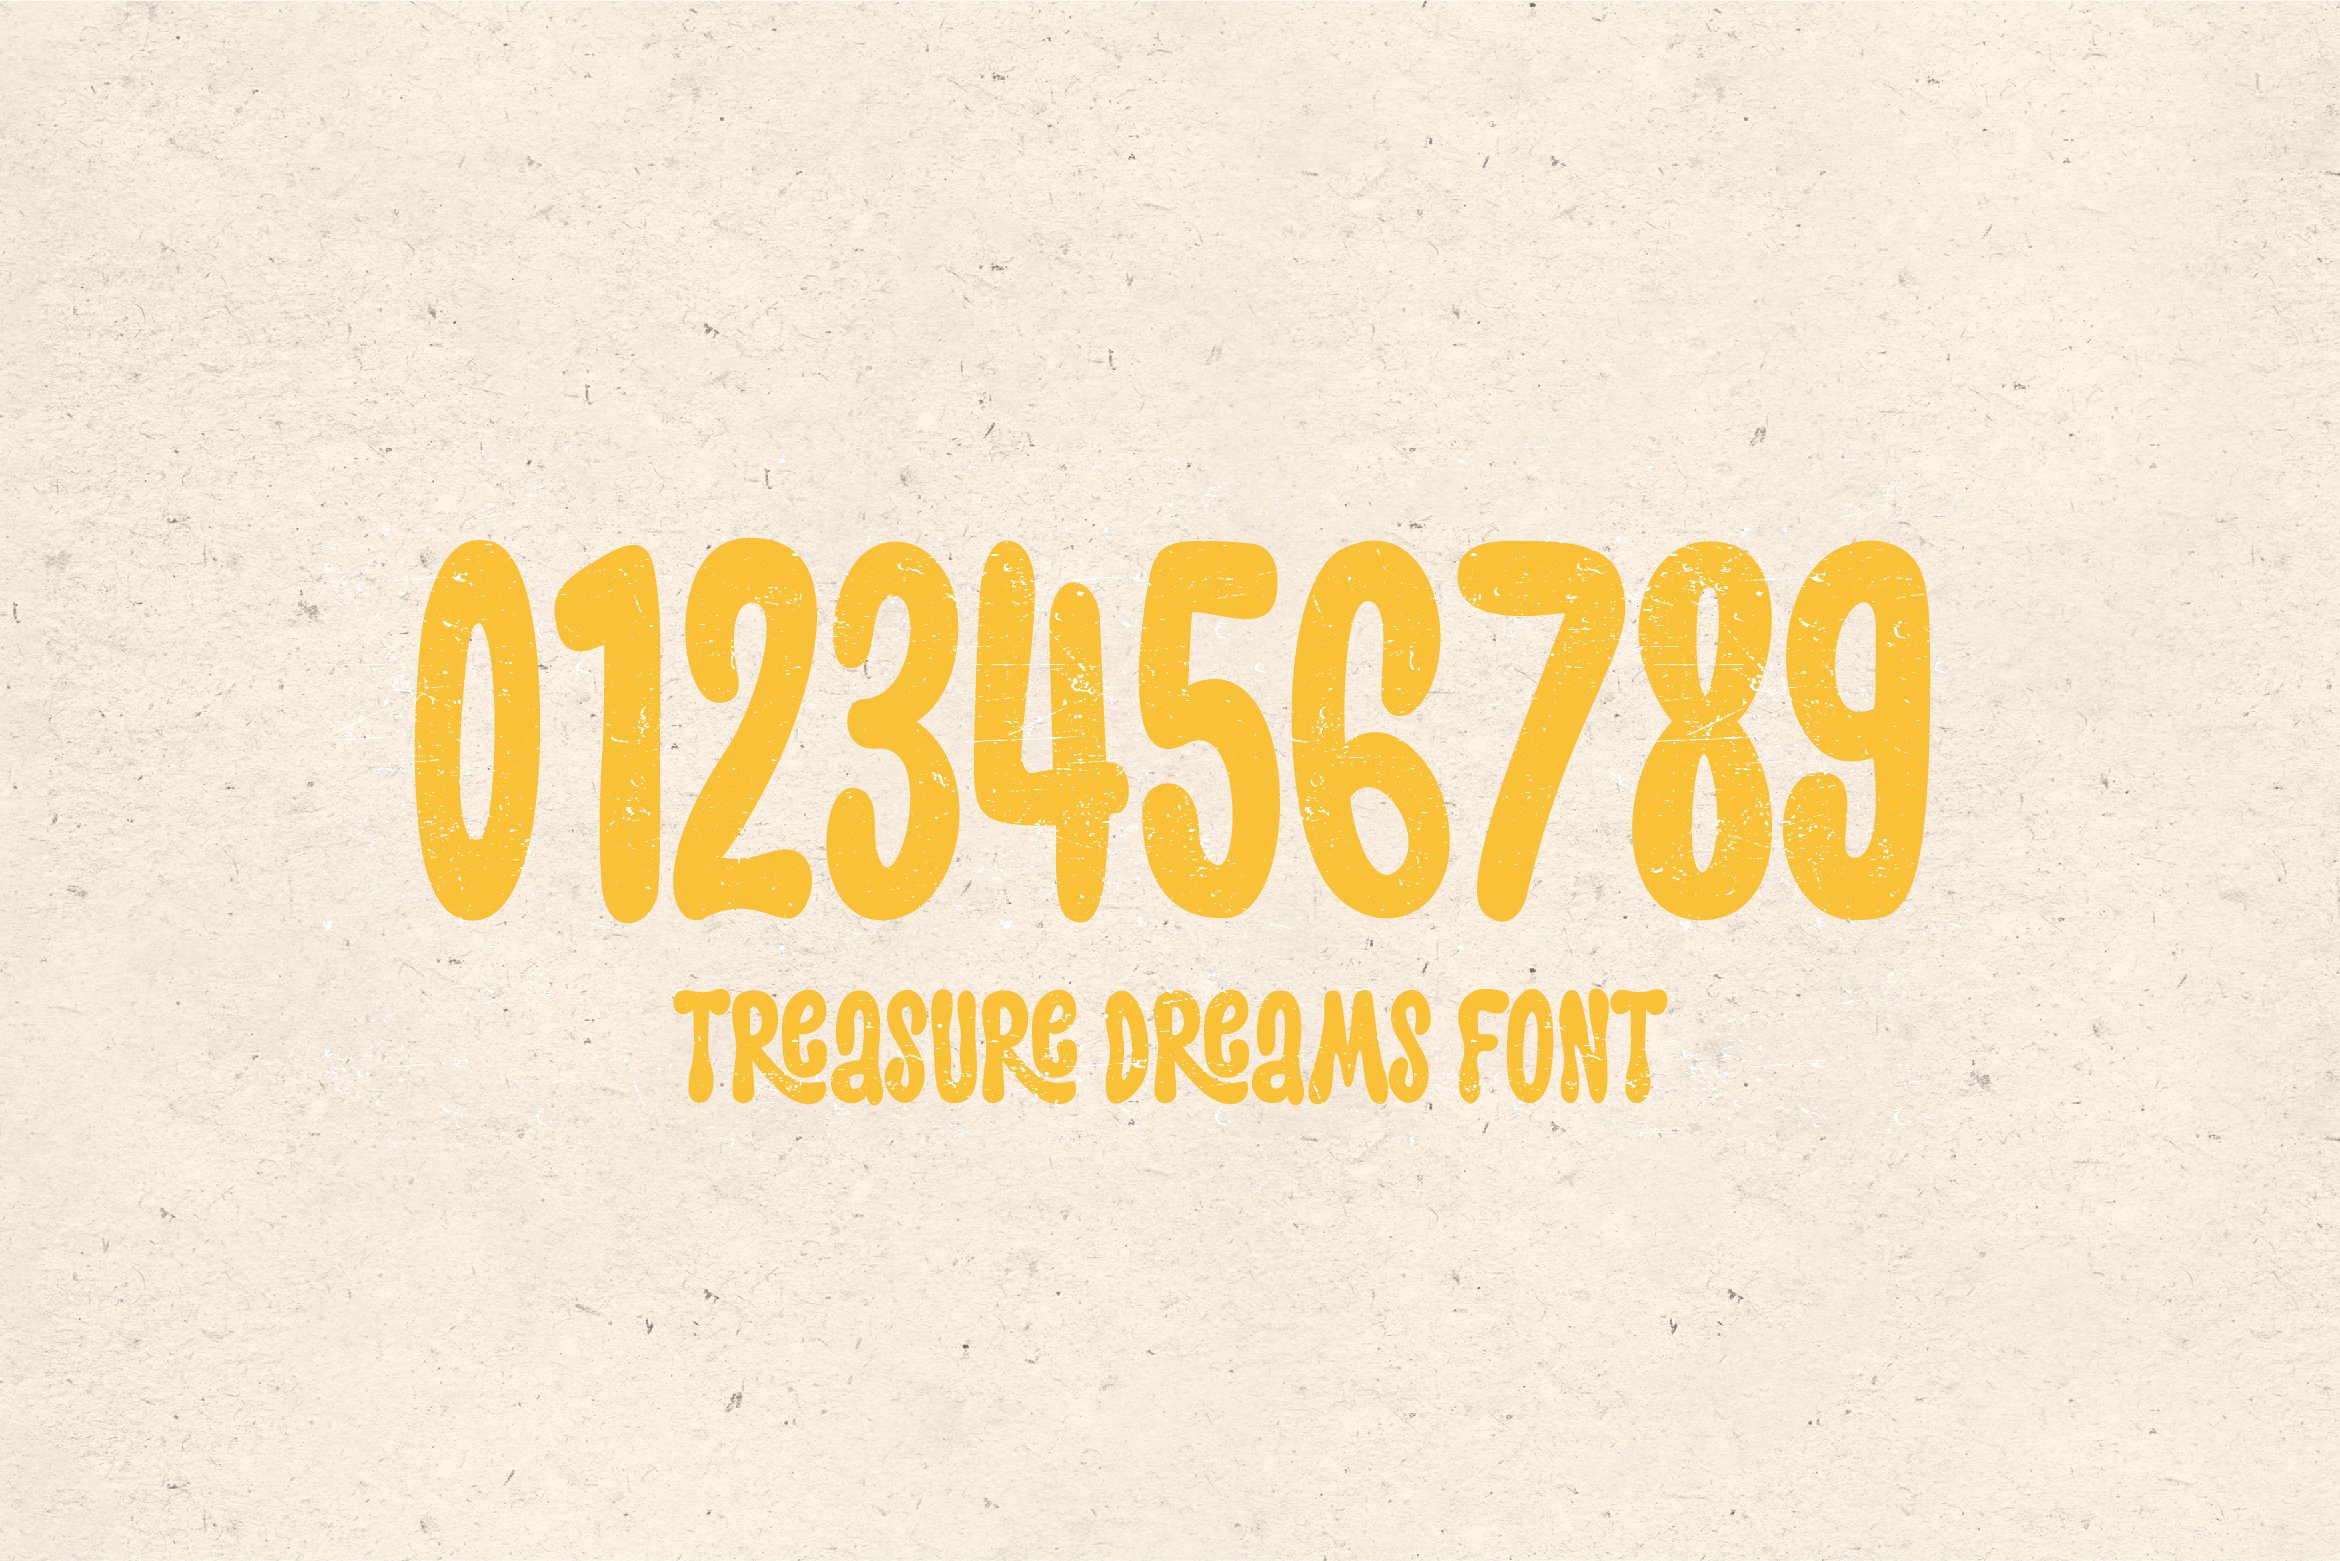 treasure dreams preview 05 474